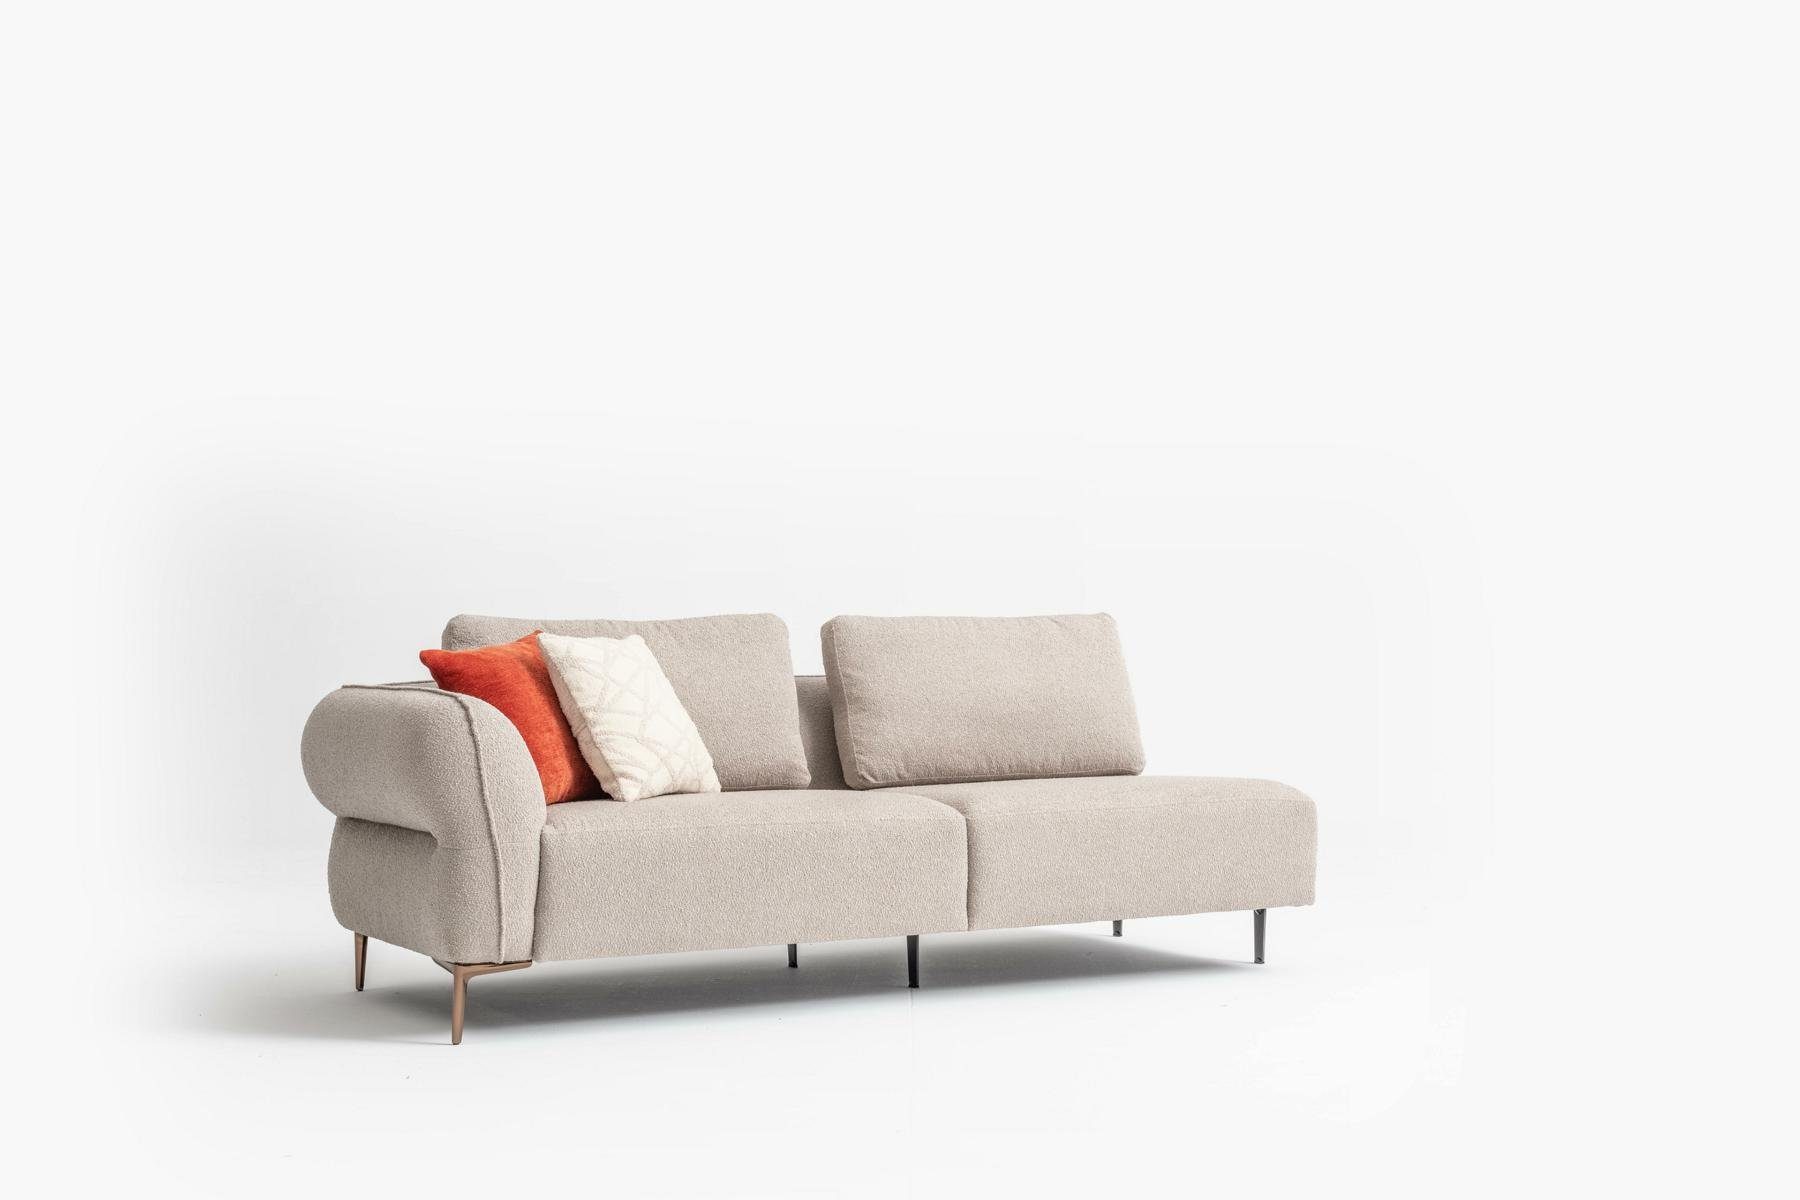 JVmoebel Big-Sofa Beige Big Sofa Couch Made Textil, in Sitzer Couchen Möbel xxl Italienische Europe 6